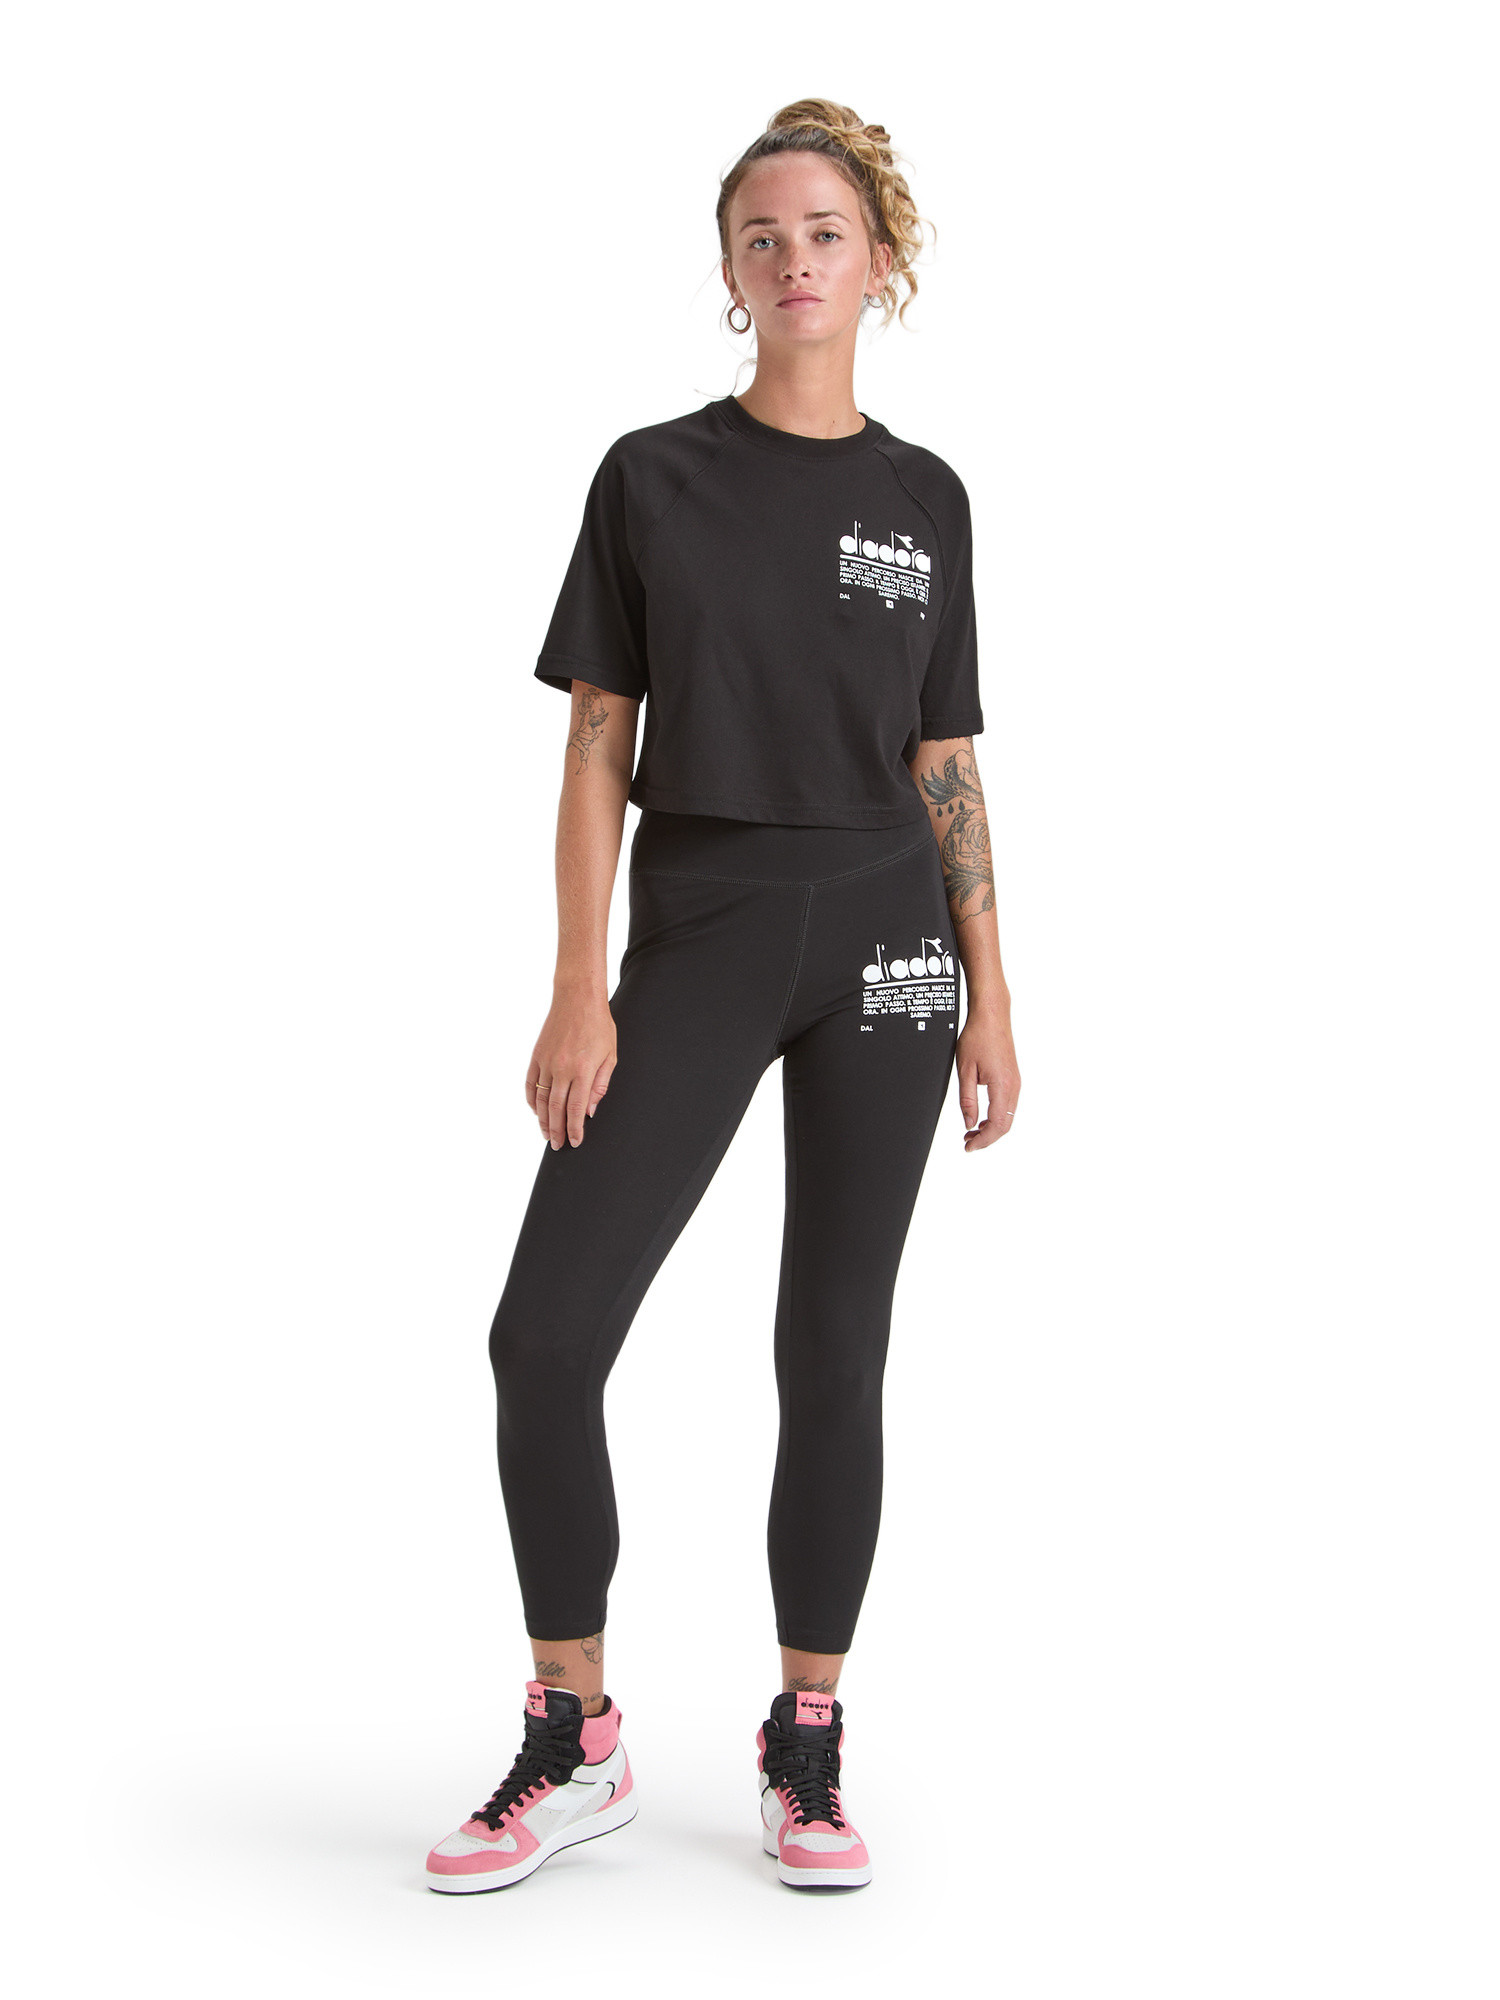 Diadora - Manifesto cotton T-shirt, Black, large image number 4